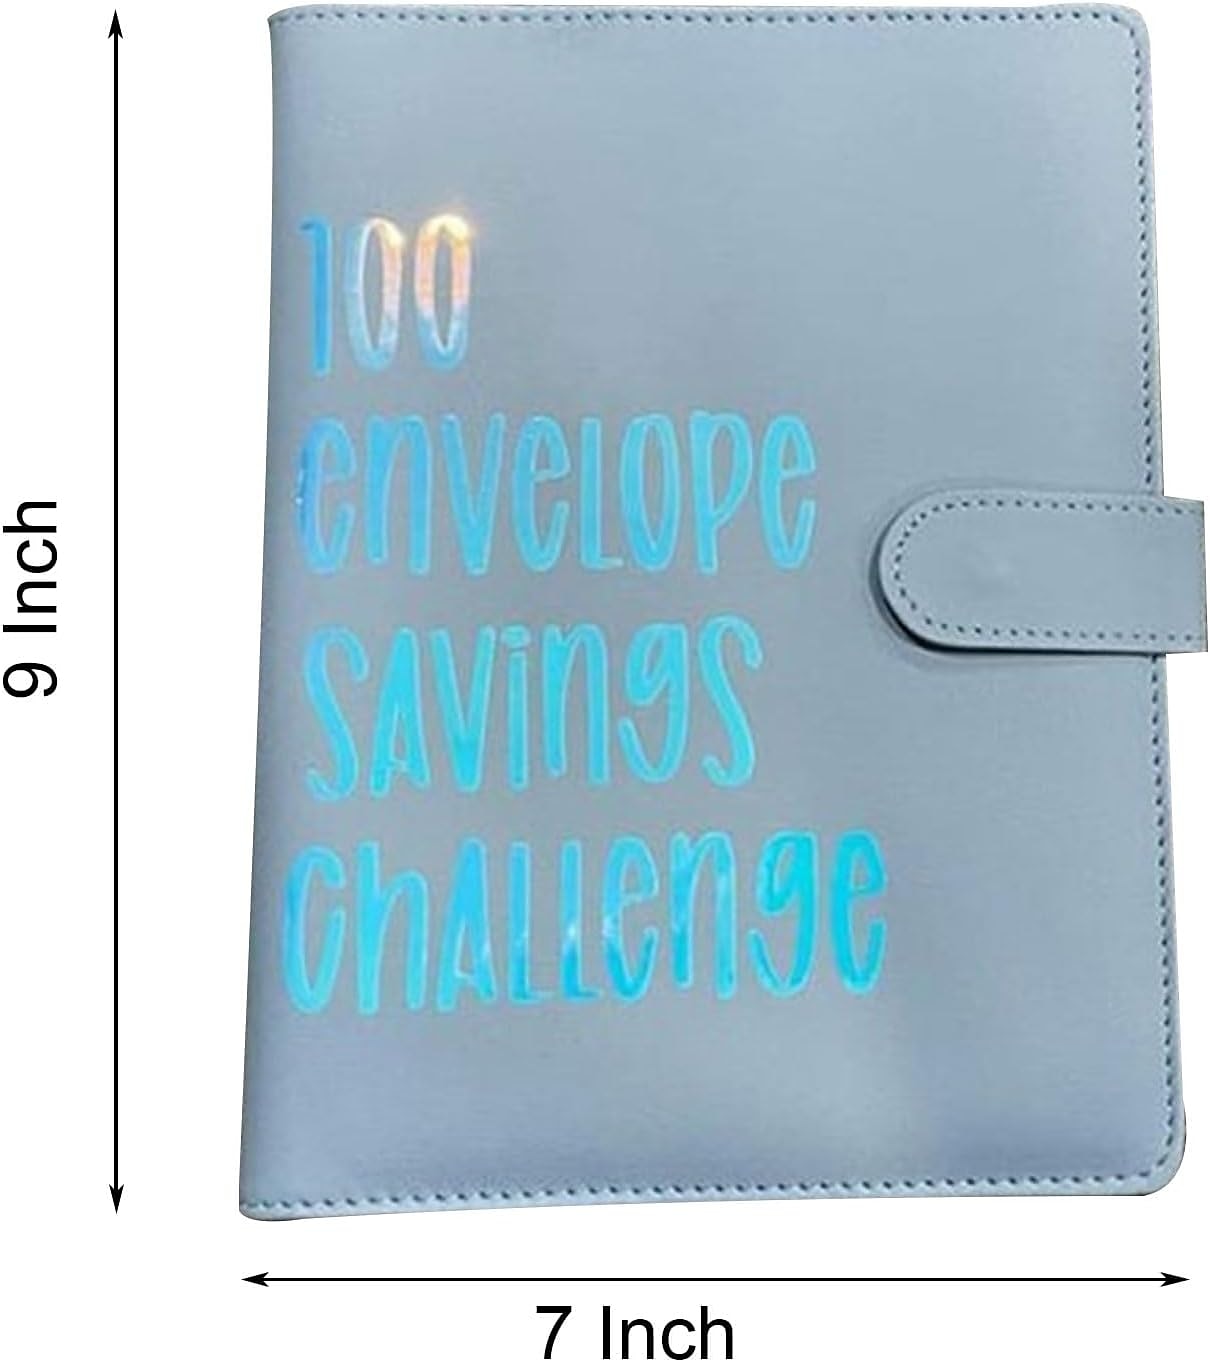 Leather A5 Budget Planner 100 Envelopes Money Saving Challenge Binder -  China Budget Binder, 100 Envelope Challenge Binder